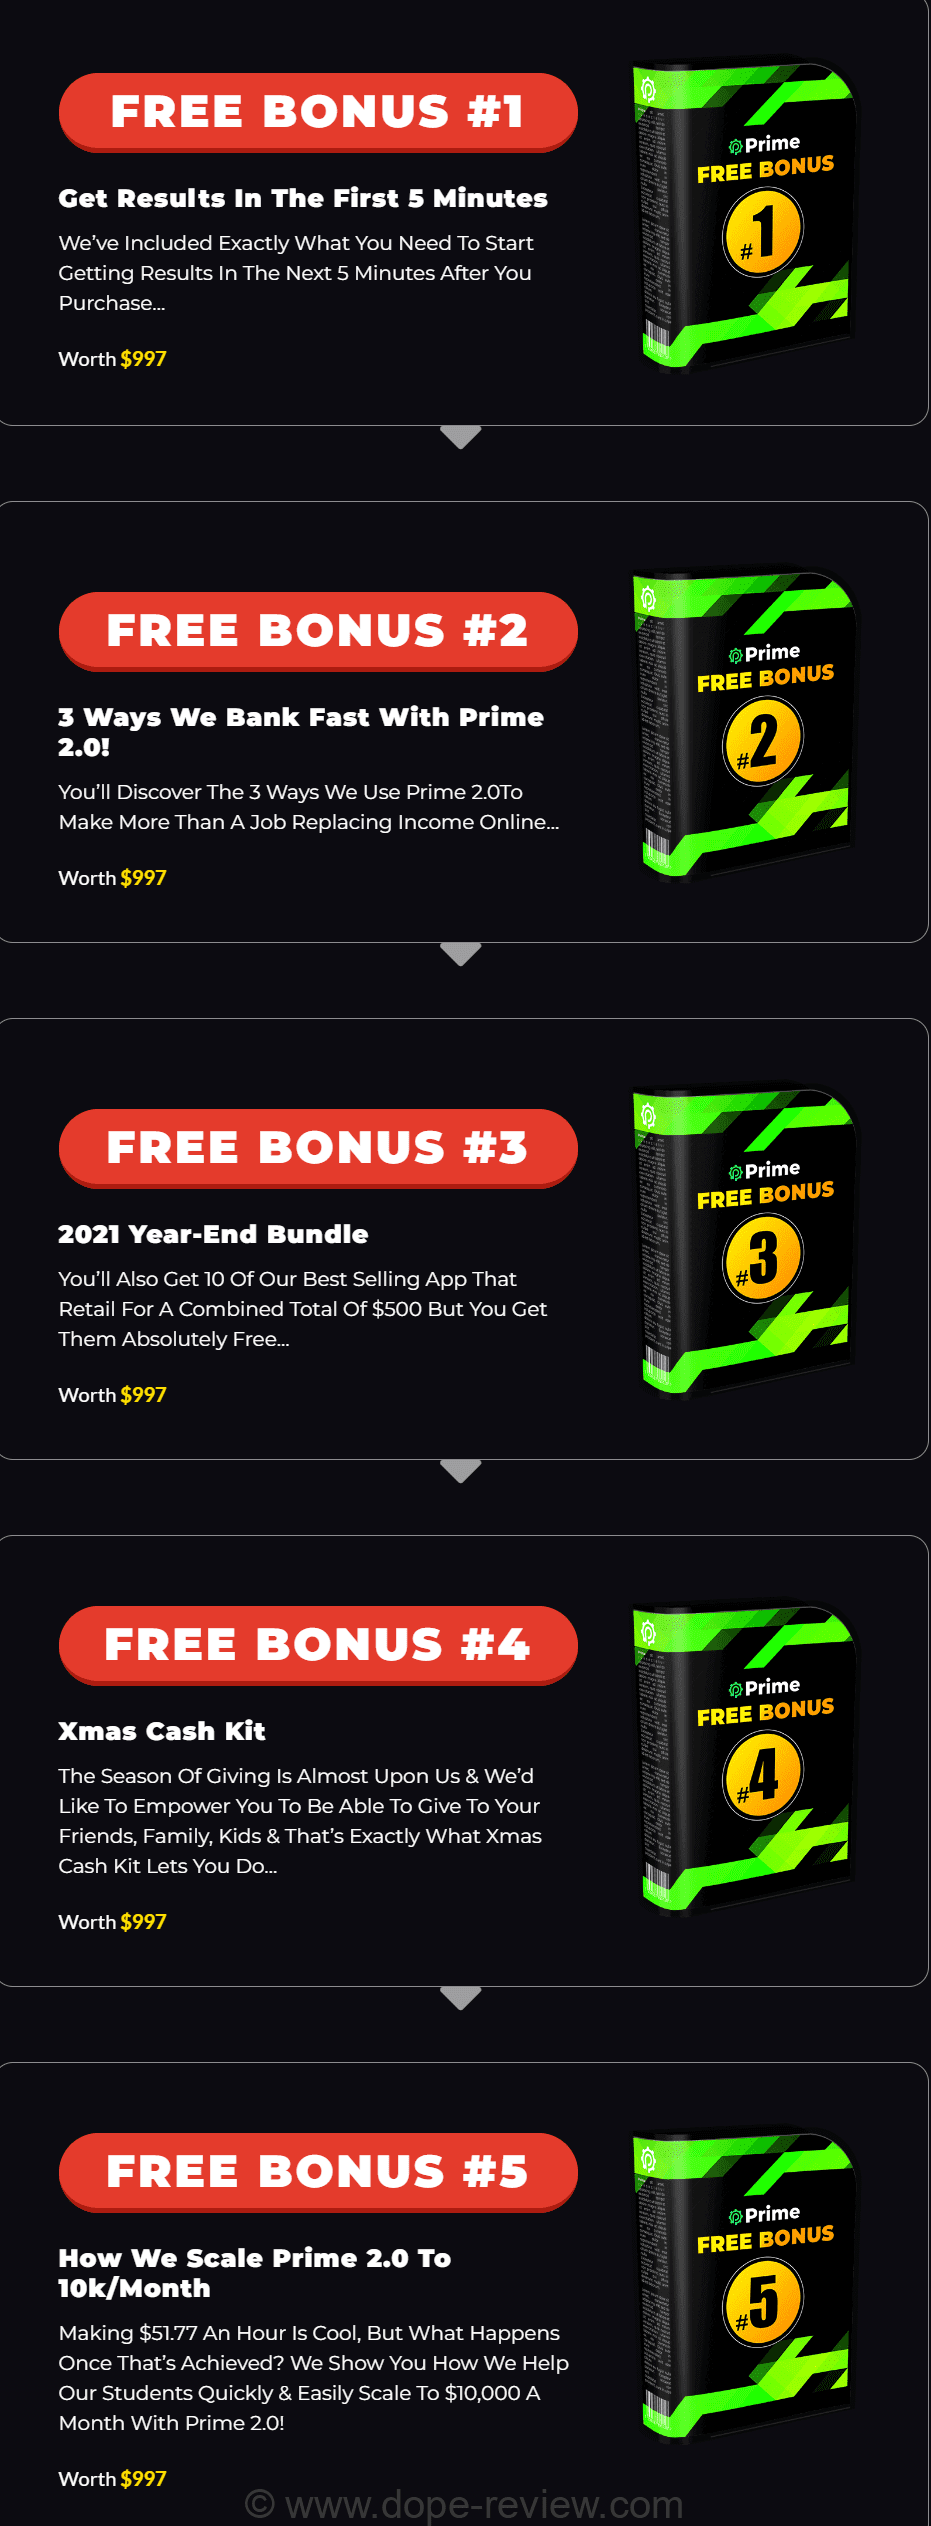 Prime 2.0 Bonus